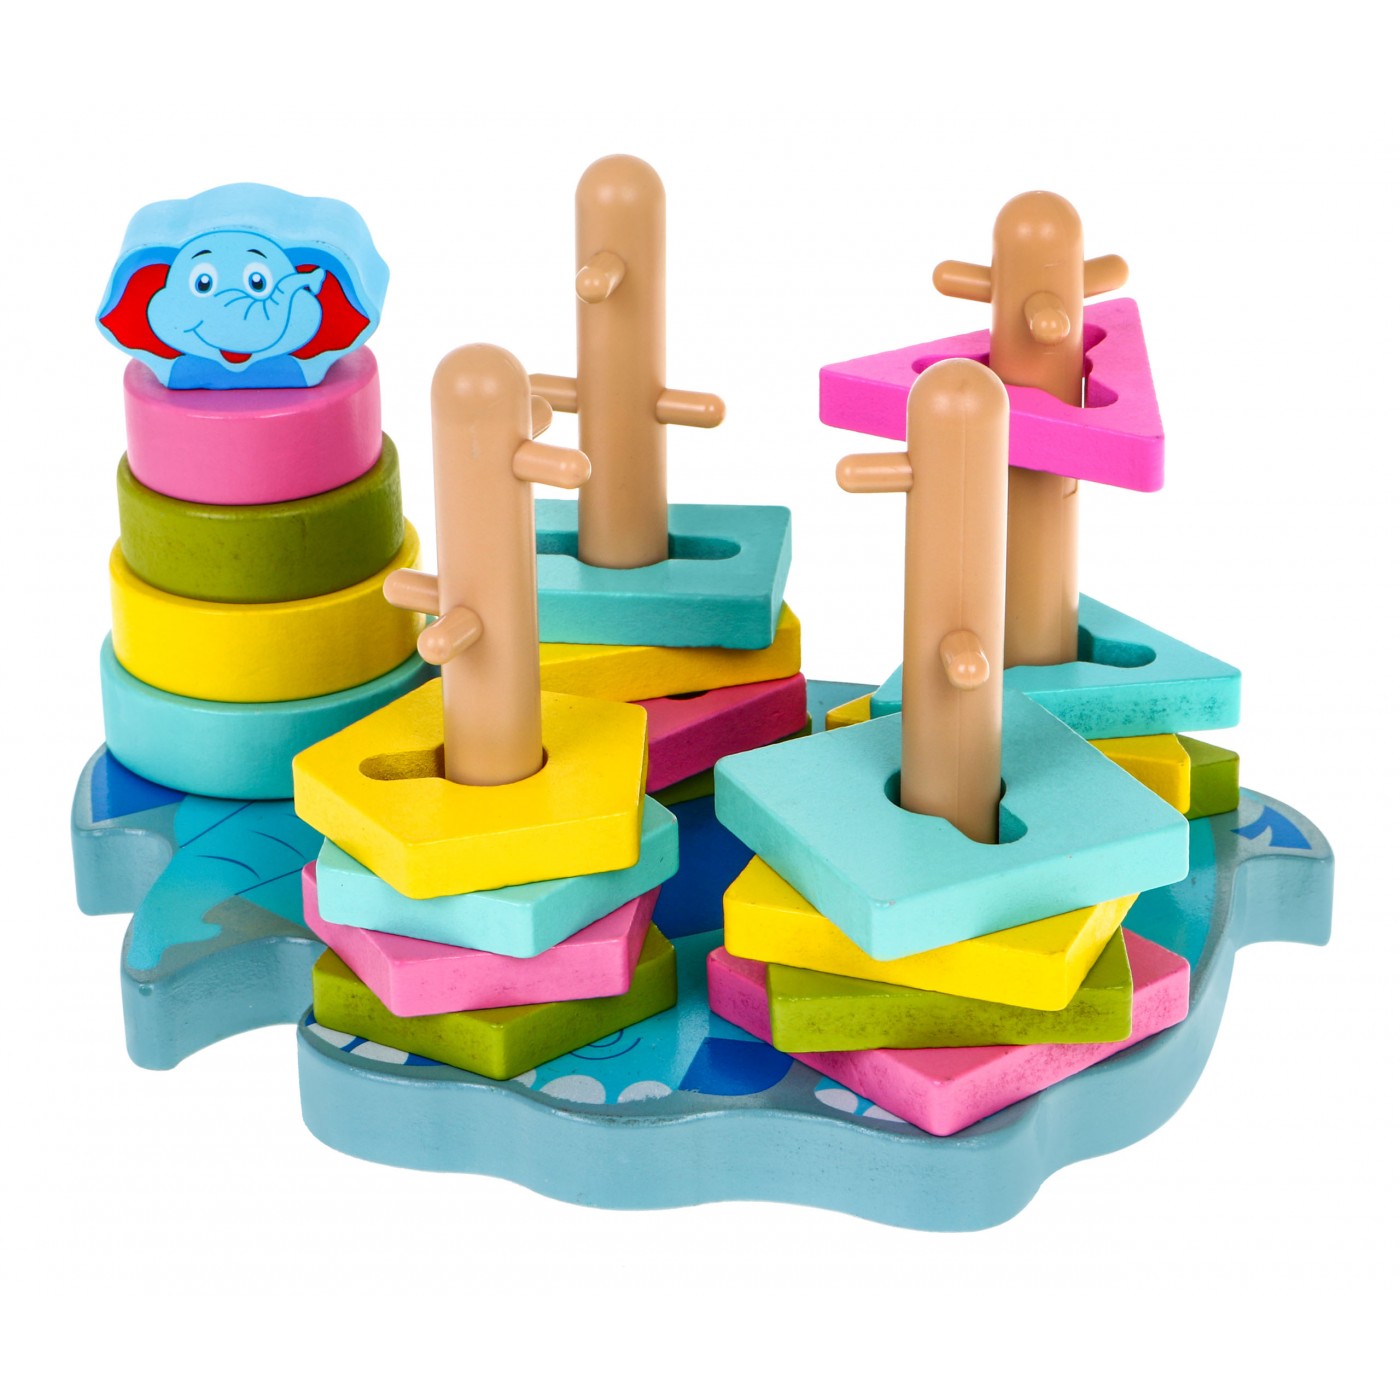 Drewniana układanka sensoryczna dla dzieci - wieża piramida sorter kształtów